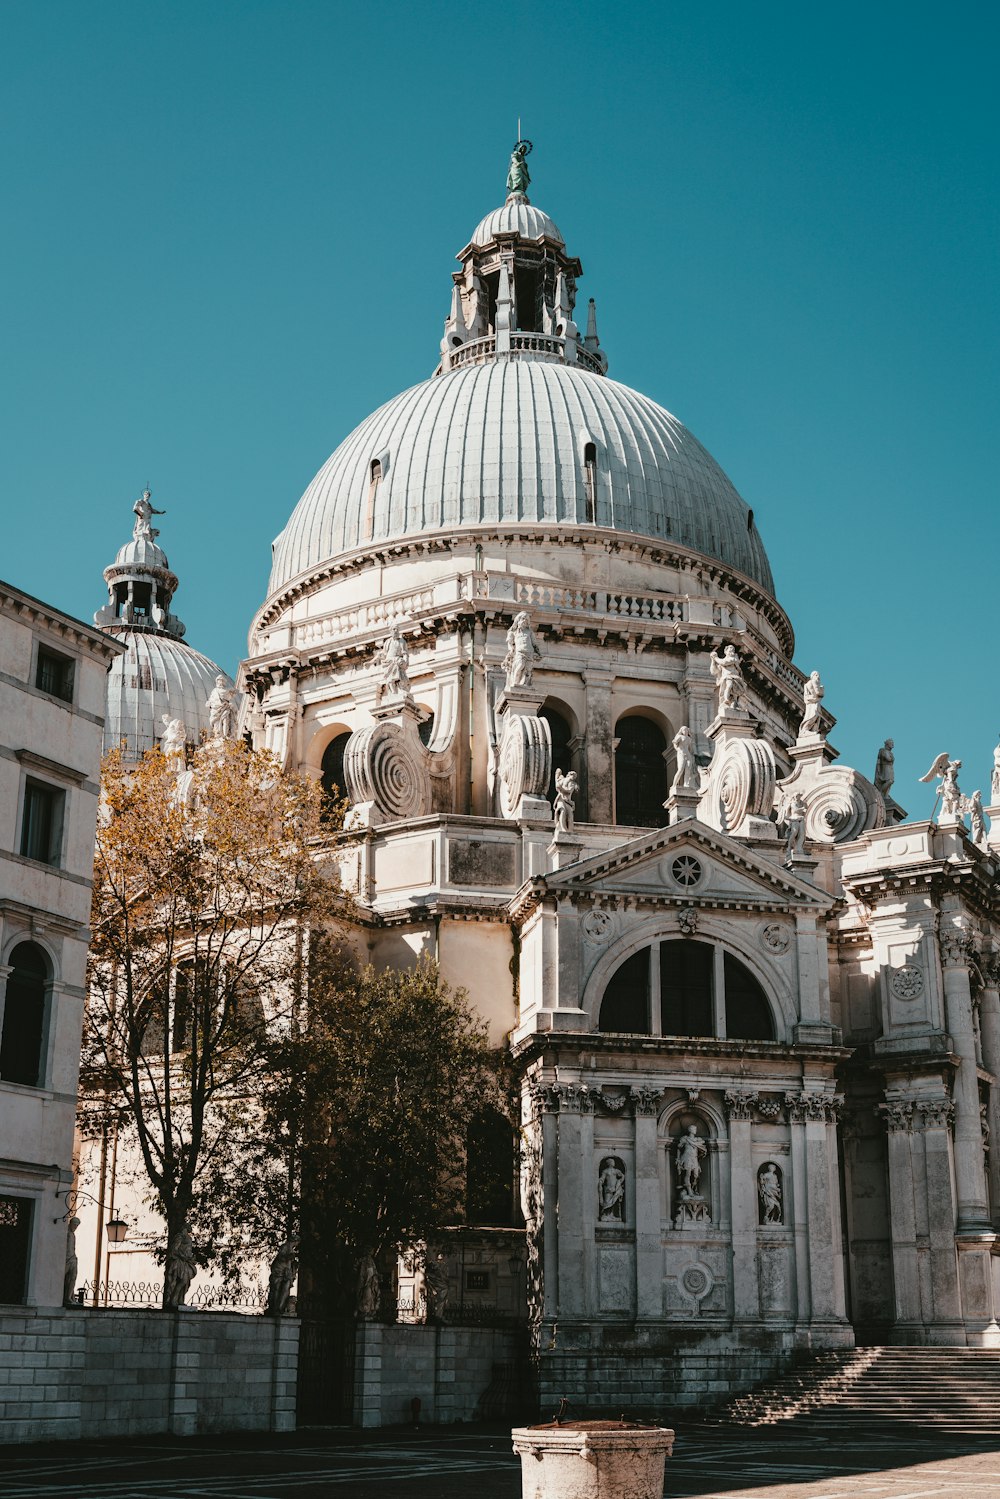 Santa Maria della Salute in Venice, Italy during daytime